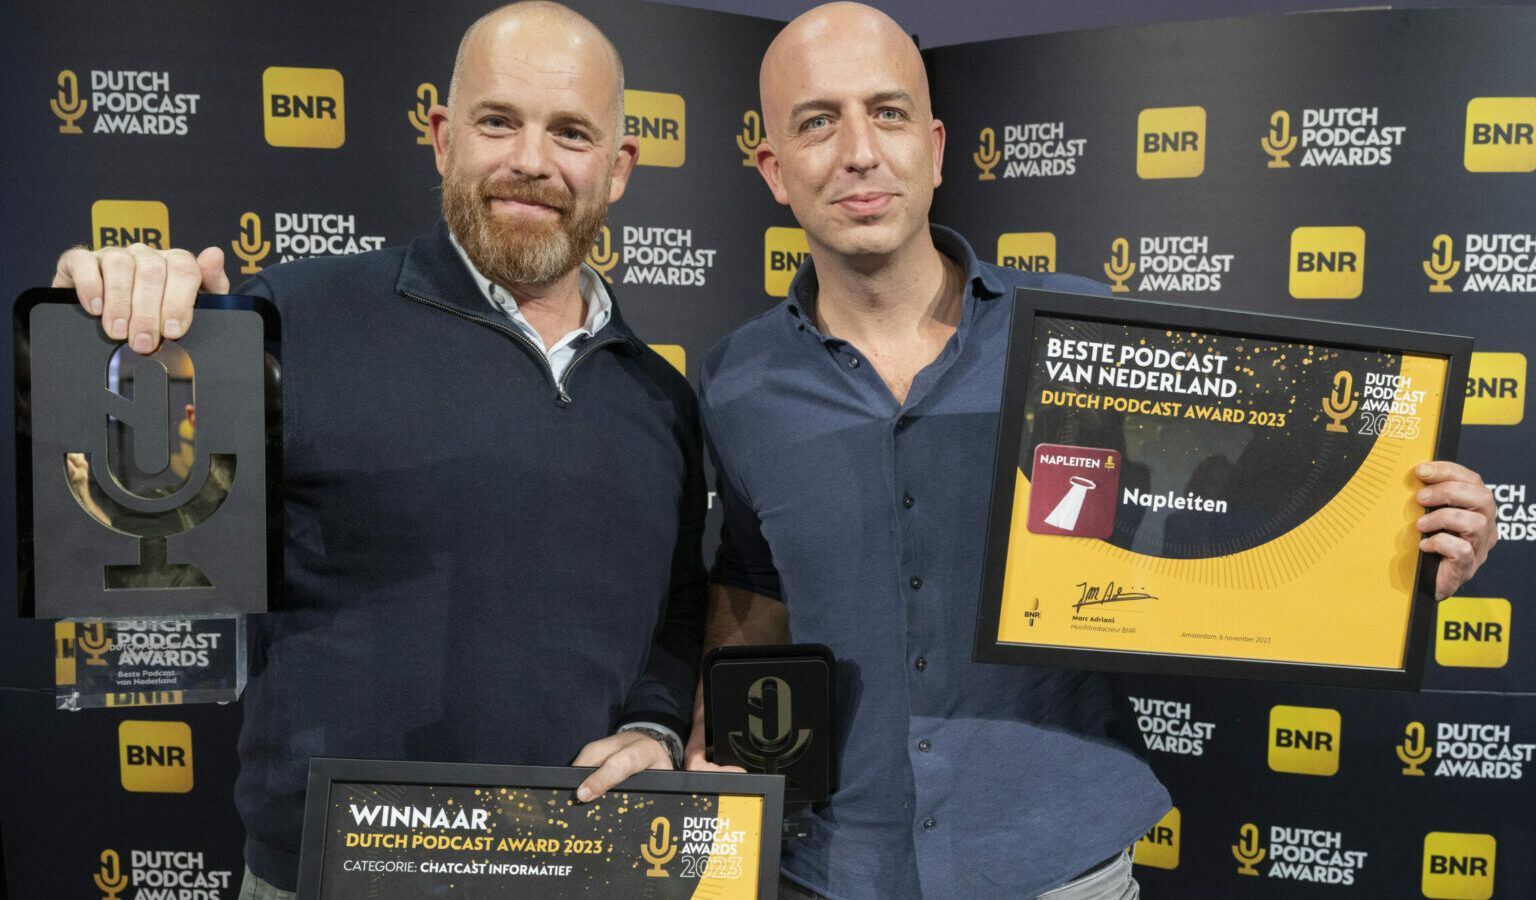 Napleiten grote winnaar Dutch Podcast Awards